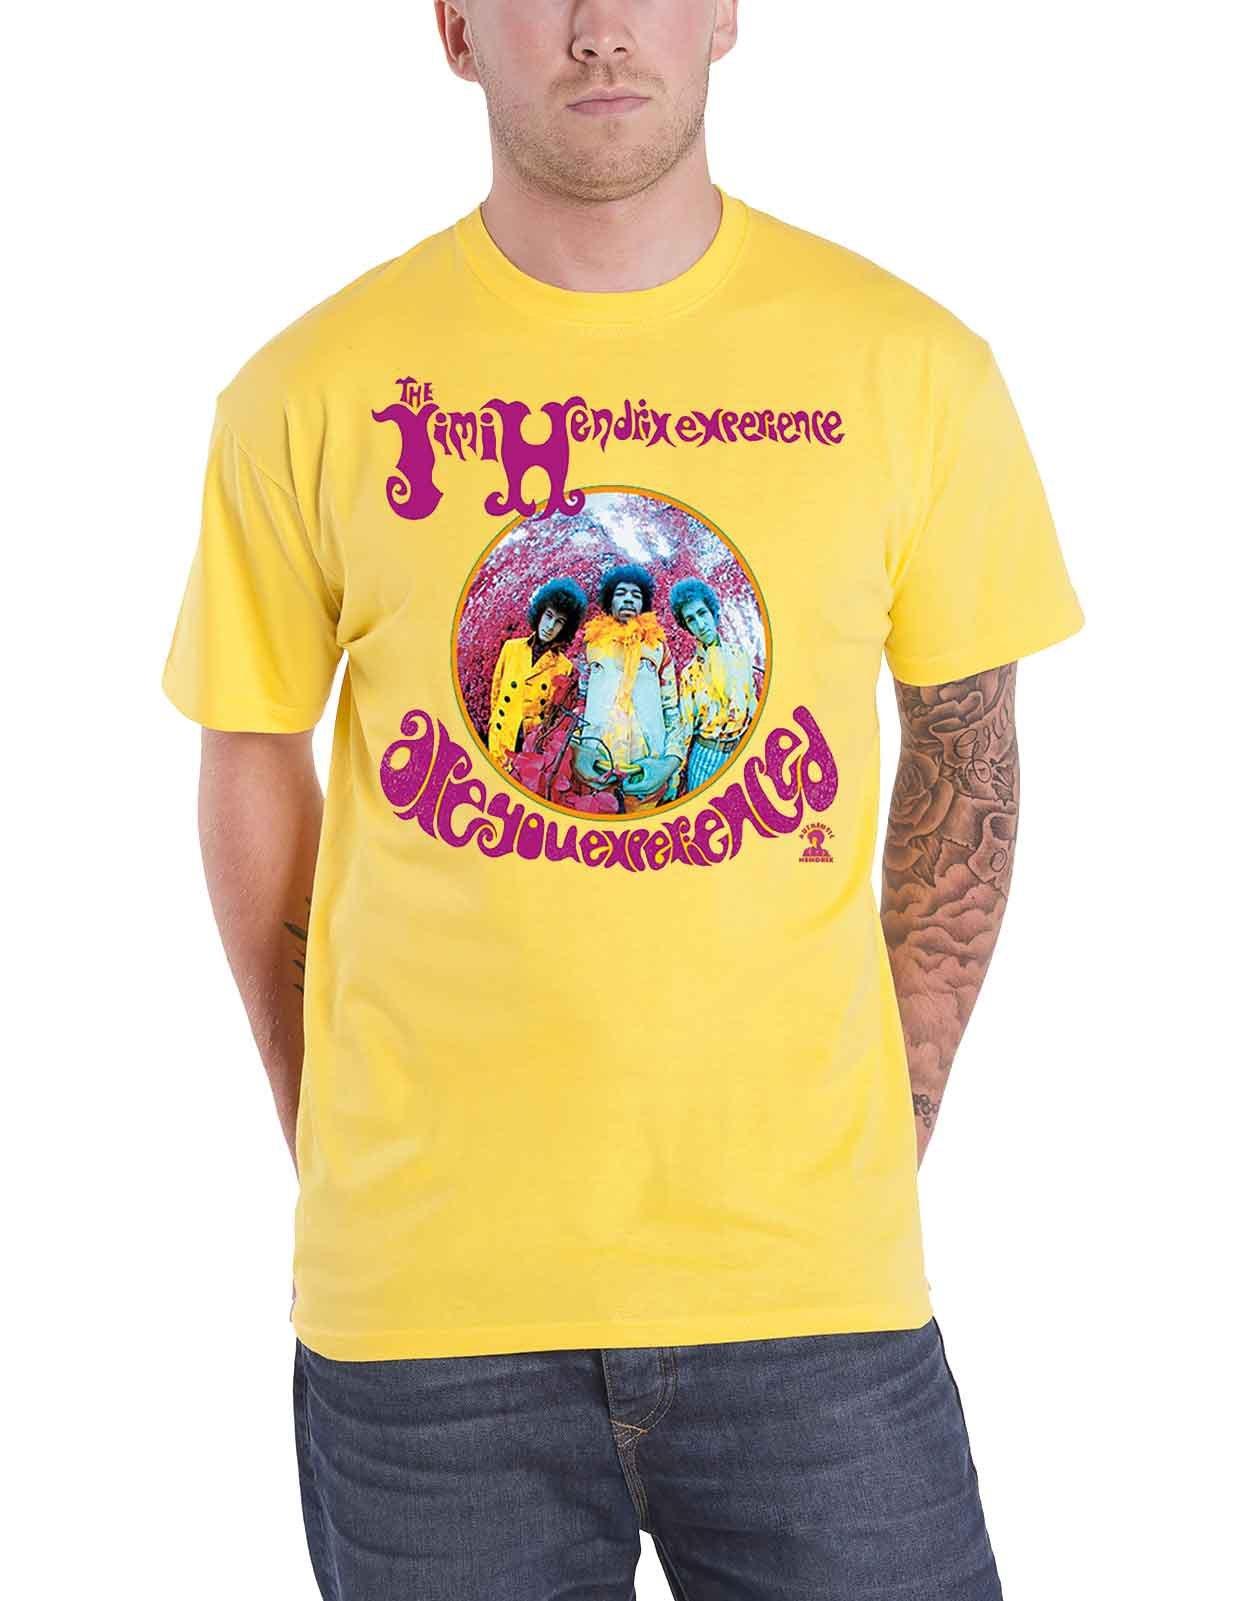 футболка вы опытный jimi hendrix темно синий Футболка «Вы опытный» Jimi Hendrix, желтый